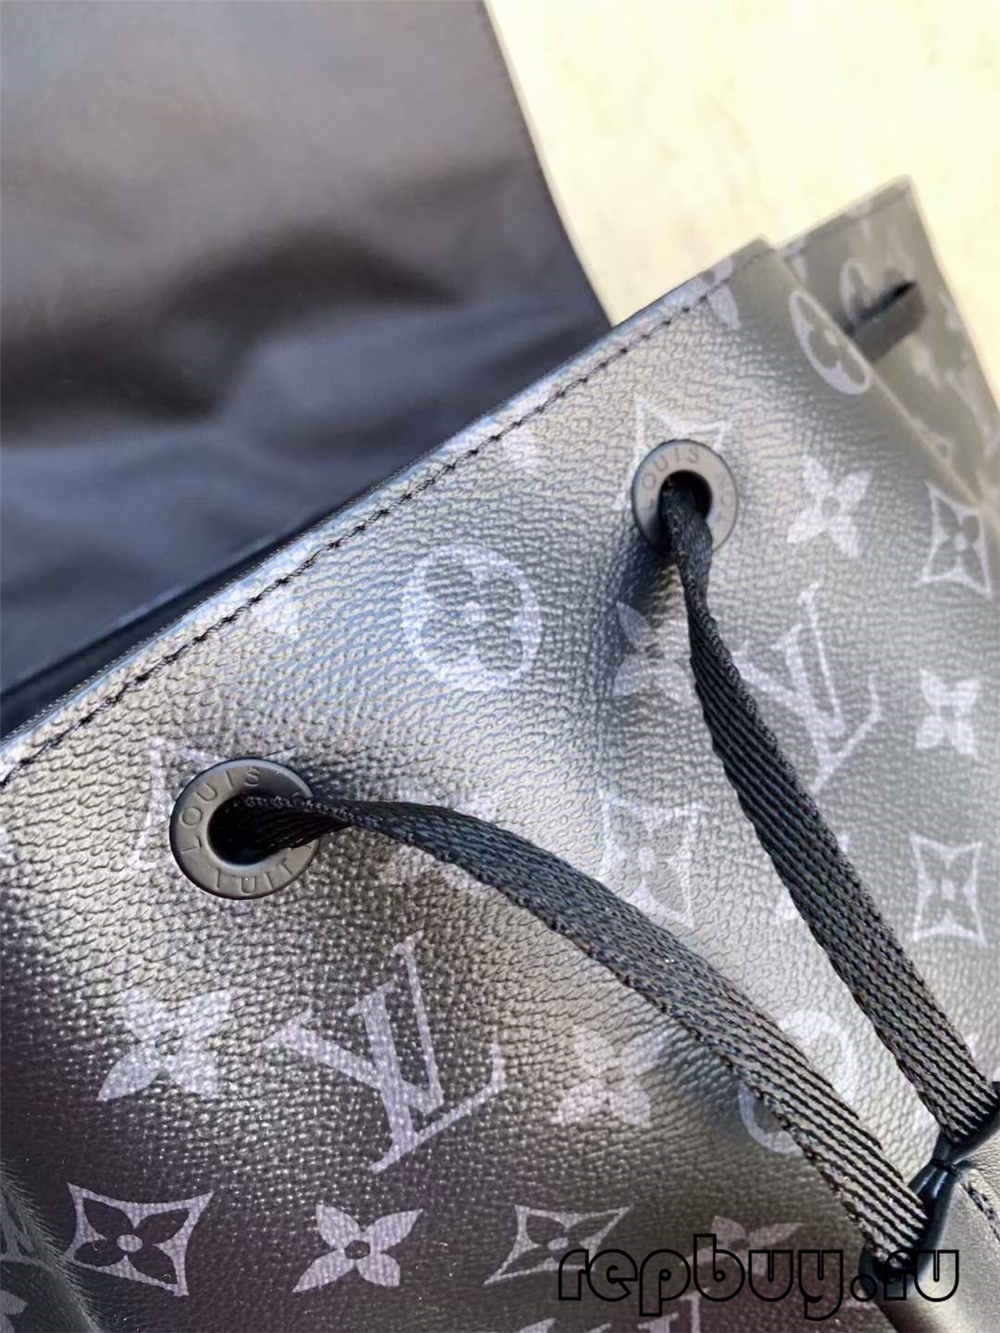 Louis Vuitton M45670 TRIO Paras laatureplica laukku (päivitetty 2022)-Paras laatu väärennetty Louis Vuitton laukku verkkokauppa, replika suunnittelija laukku ru